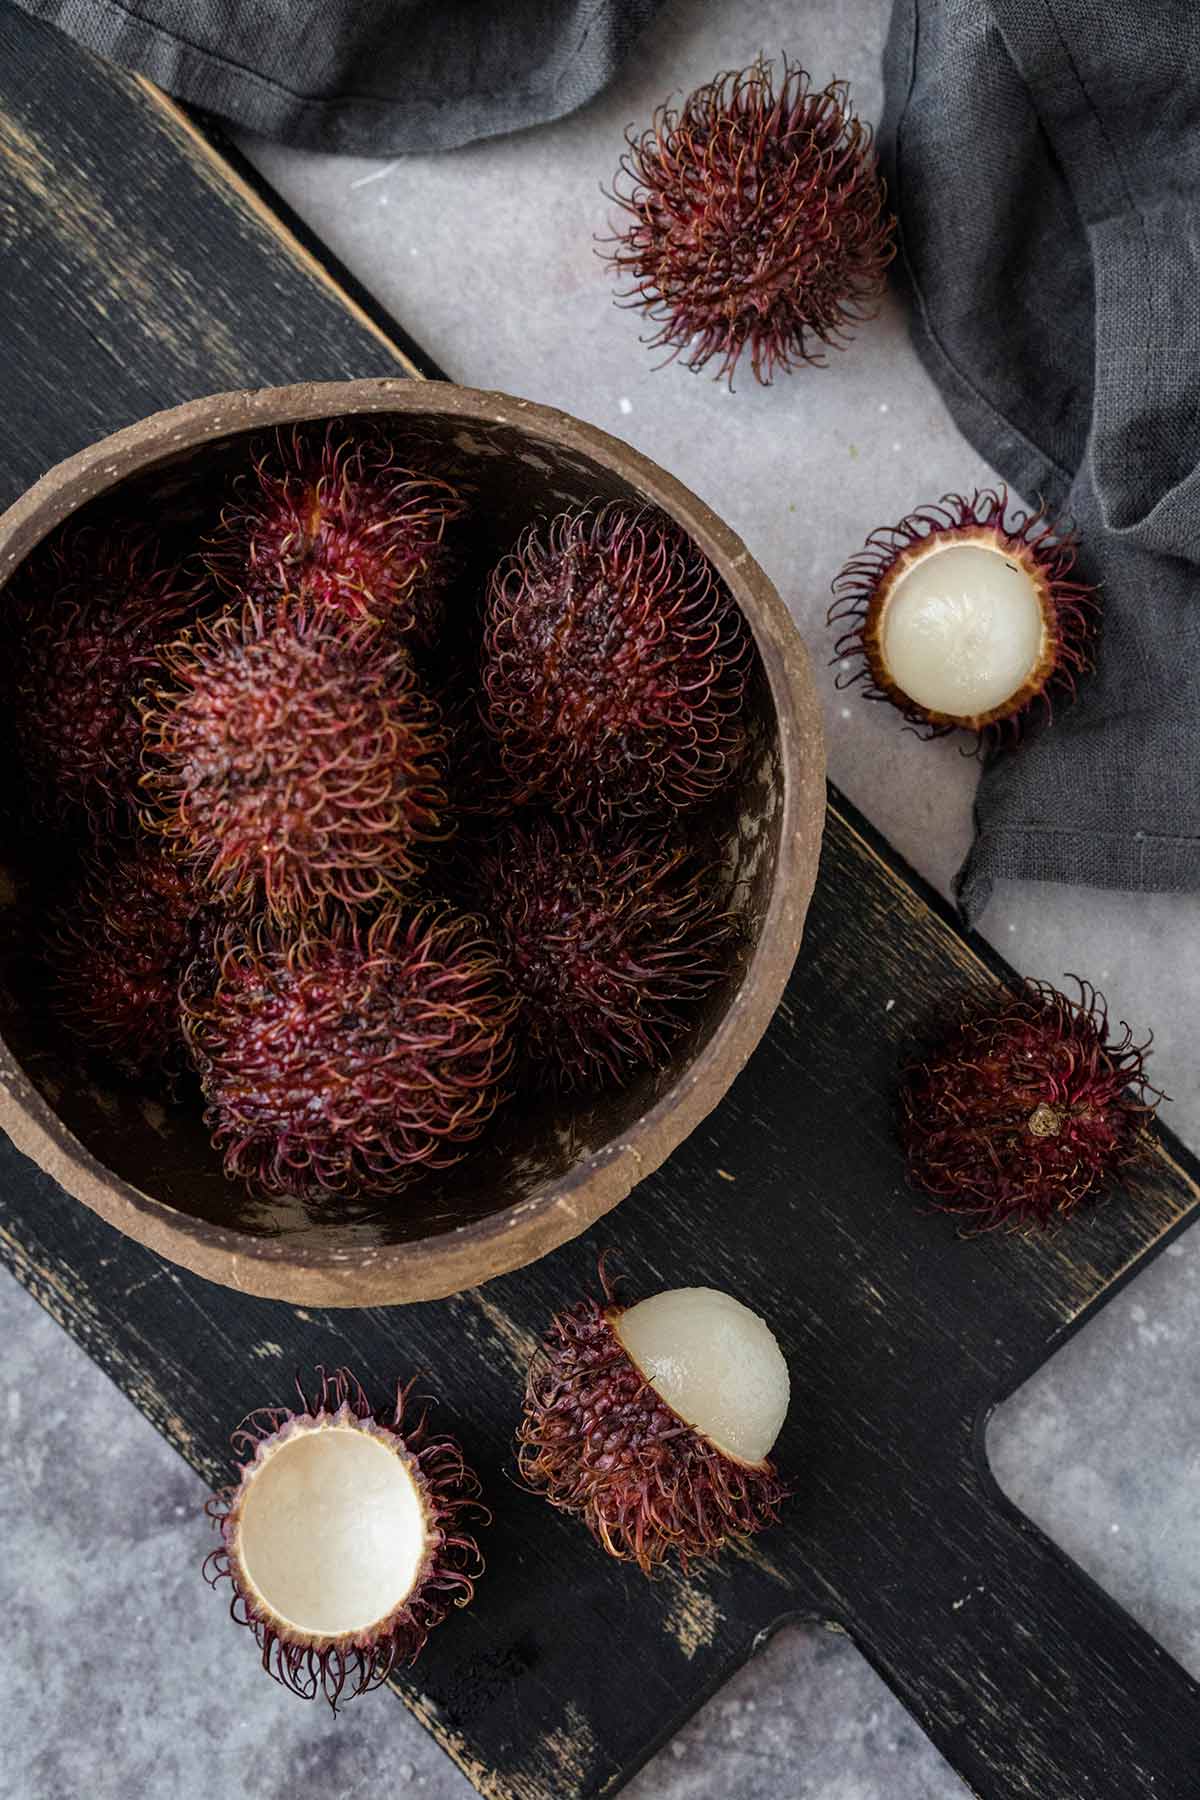 How to peel and eat rambutan fruit